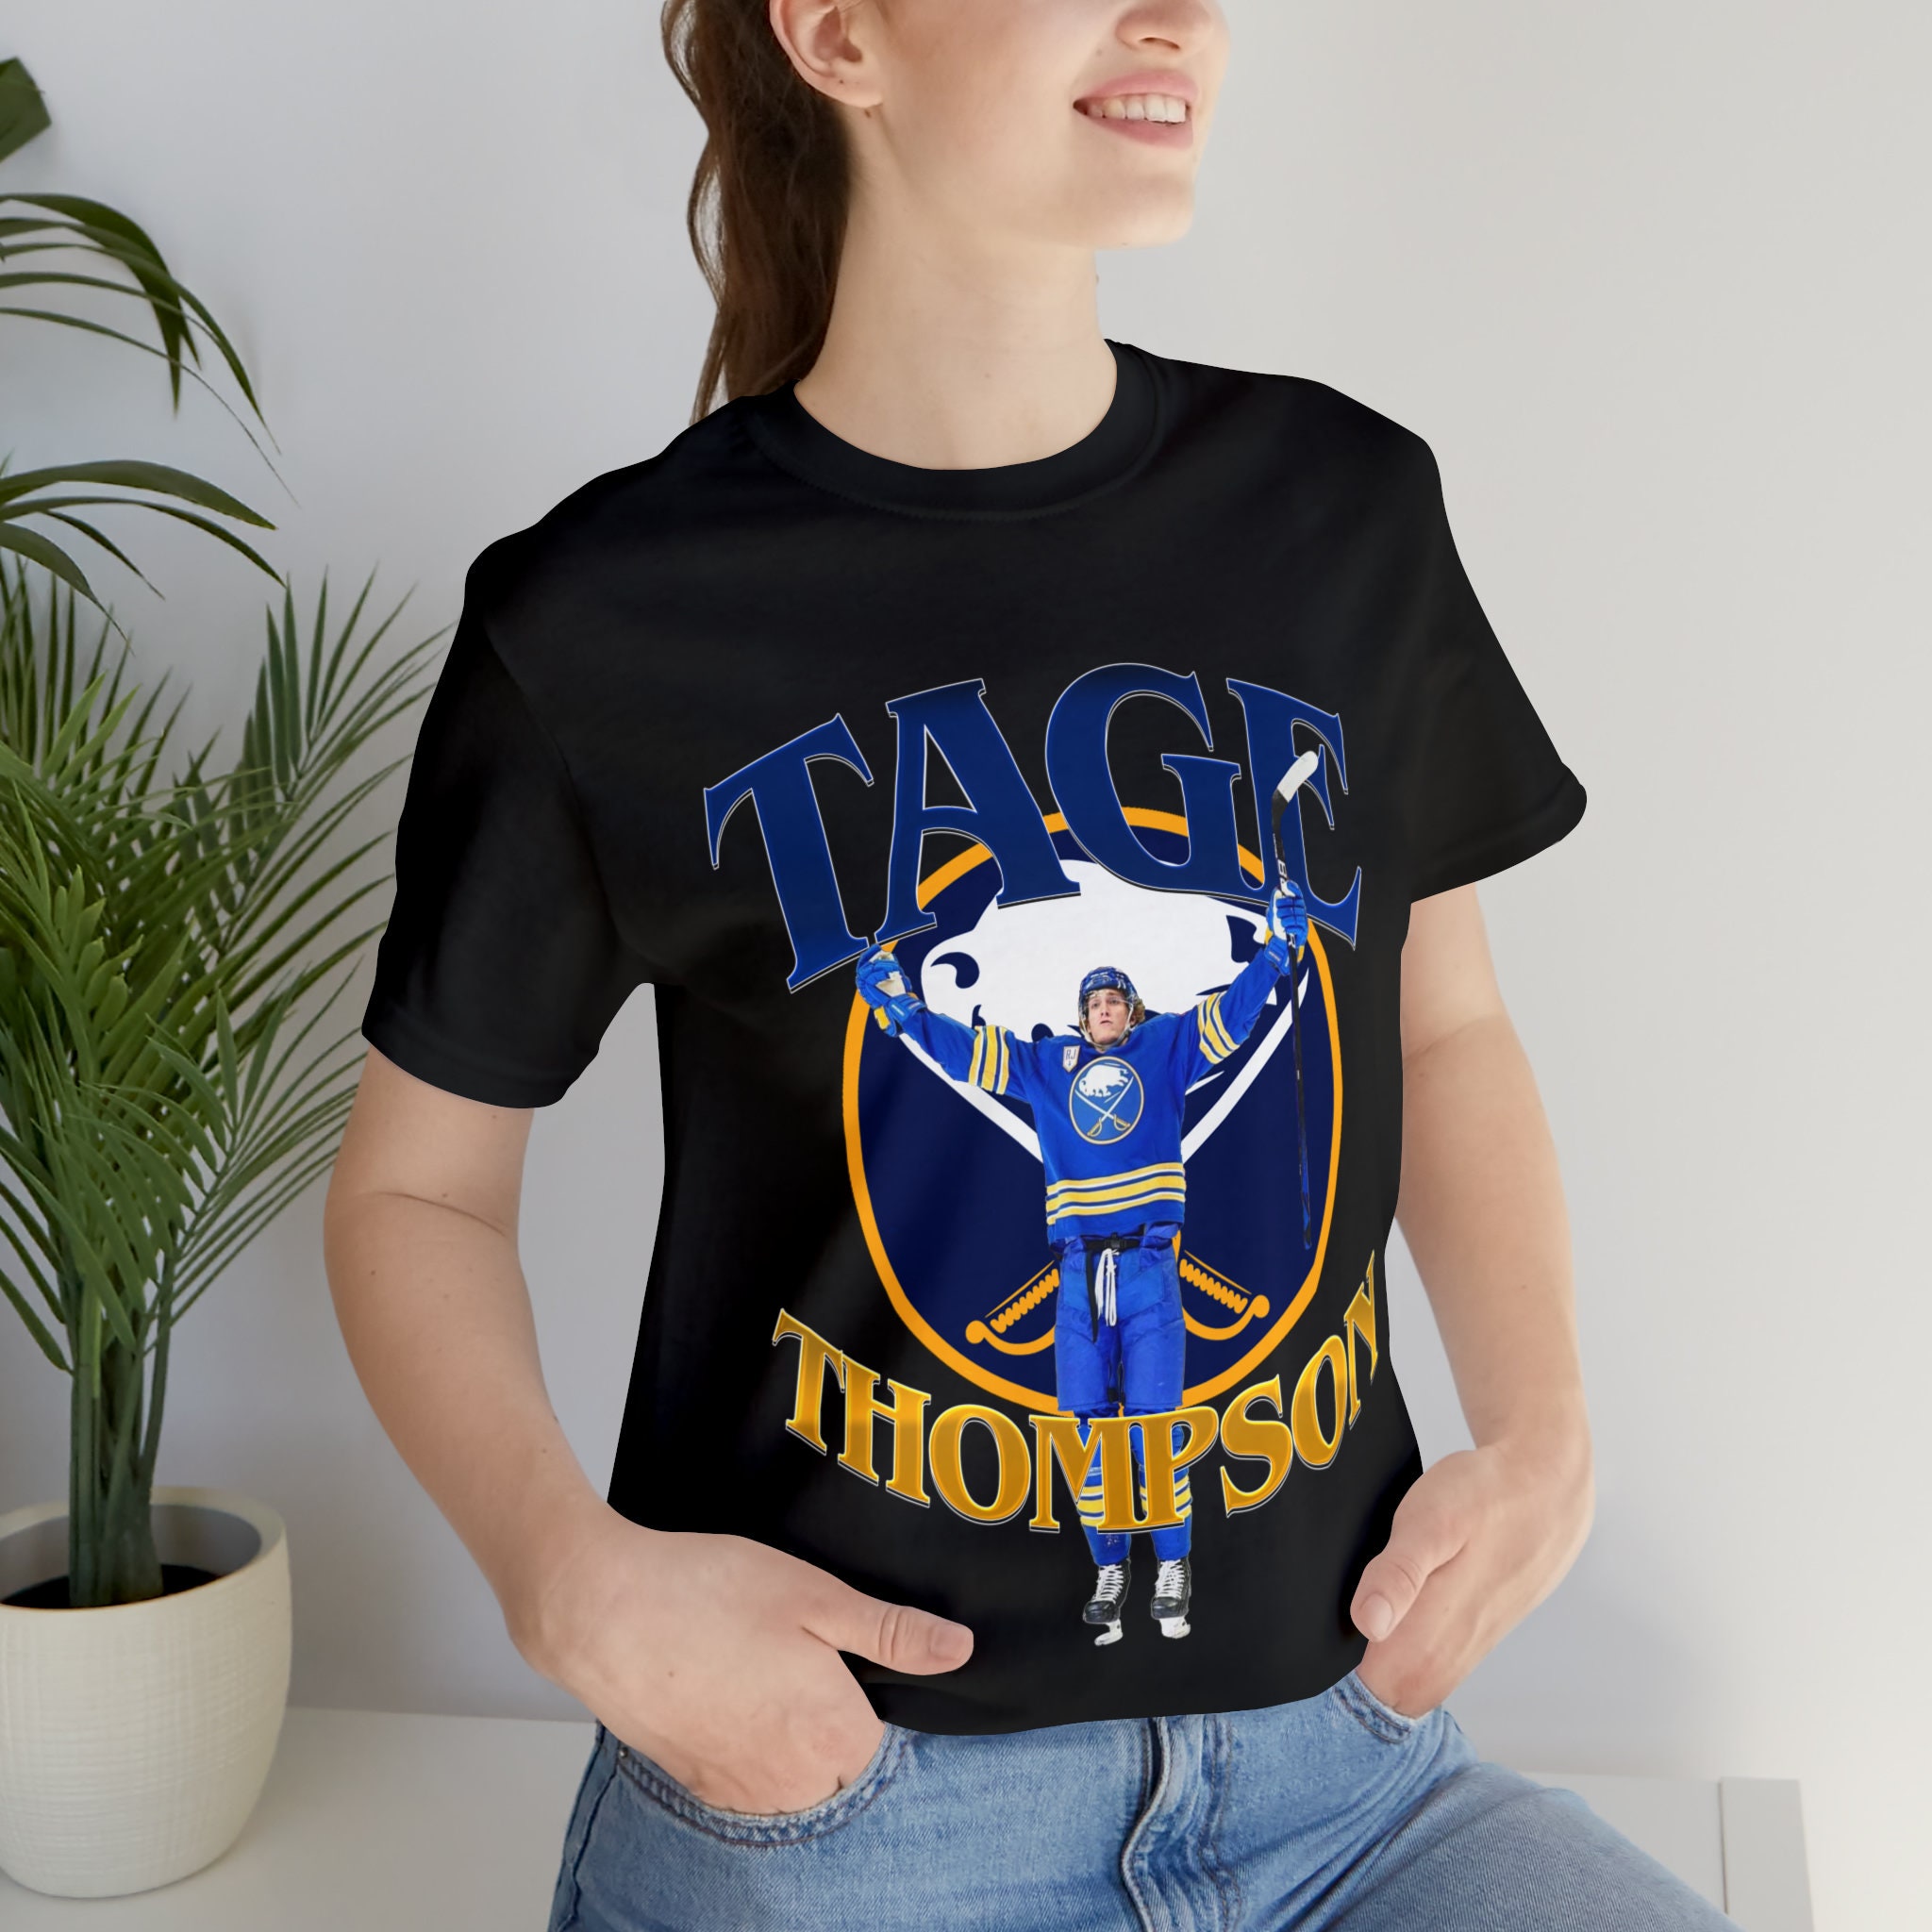 Tage Thompson Backer T-Shirt - Navy - Tshirtsedge